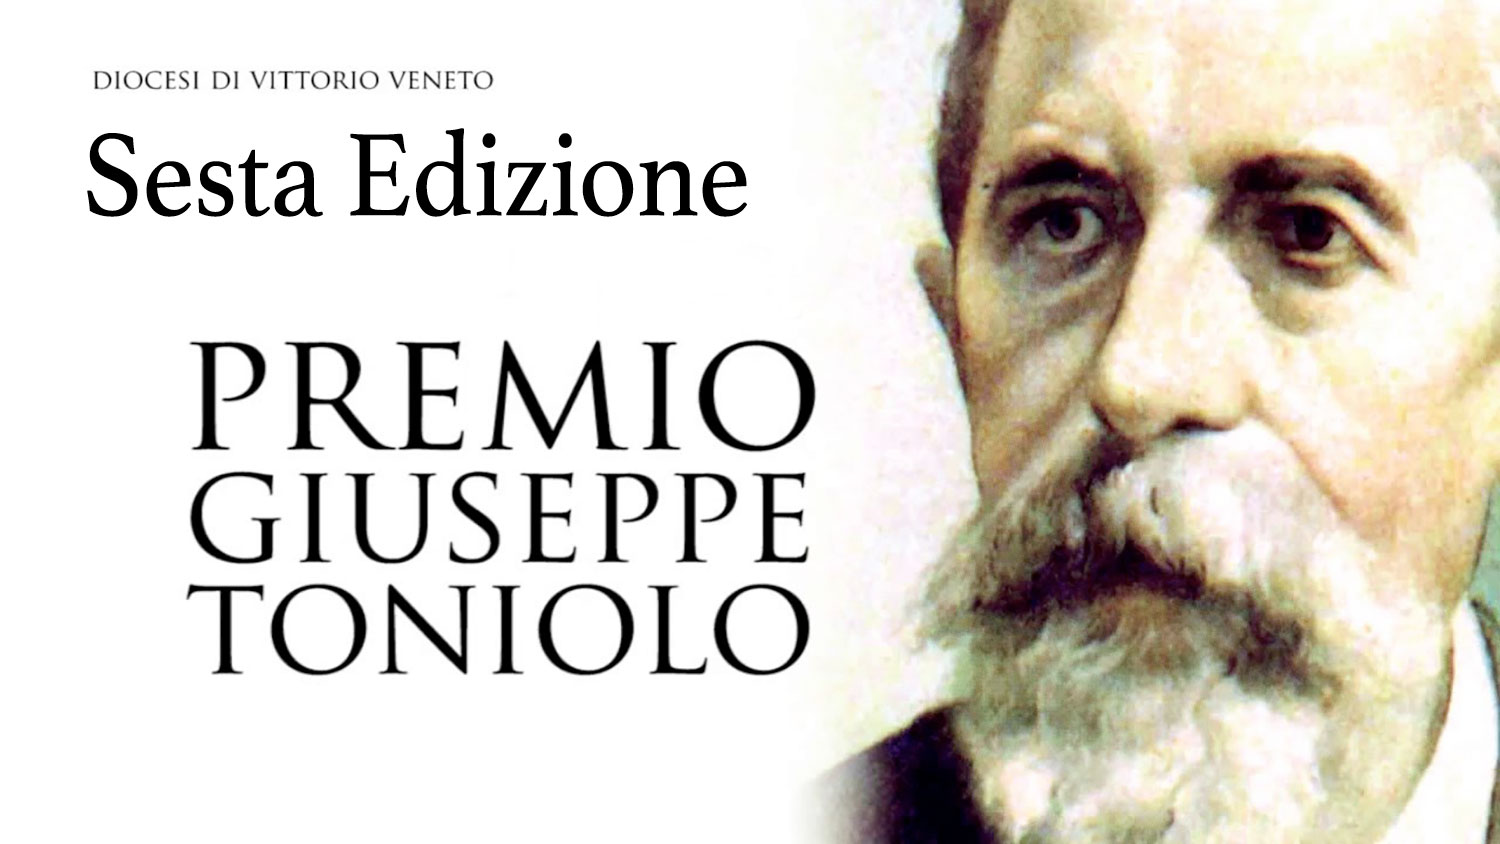 Sesta Edizione Premio Giuseppe Toniolo 2021